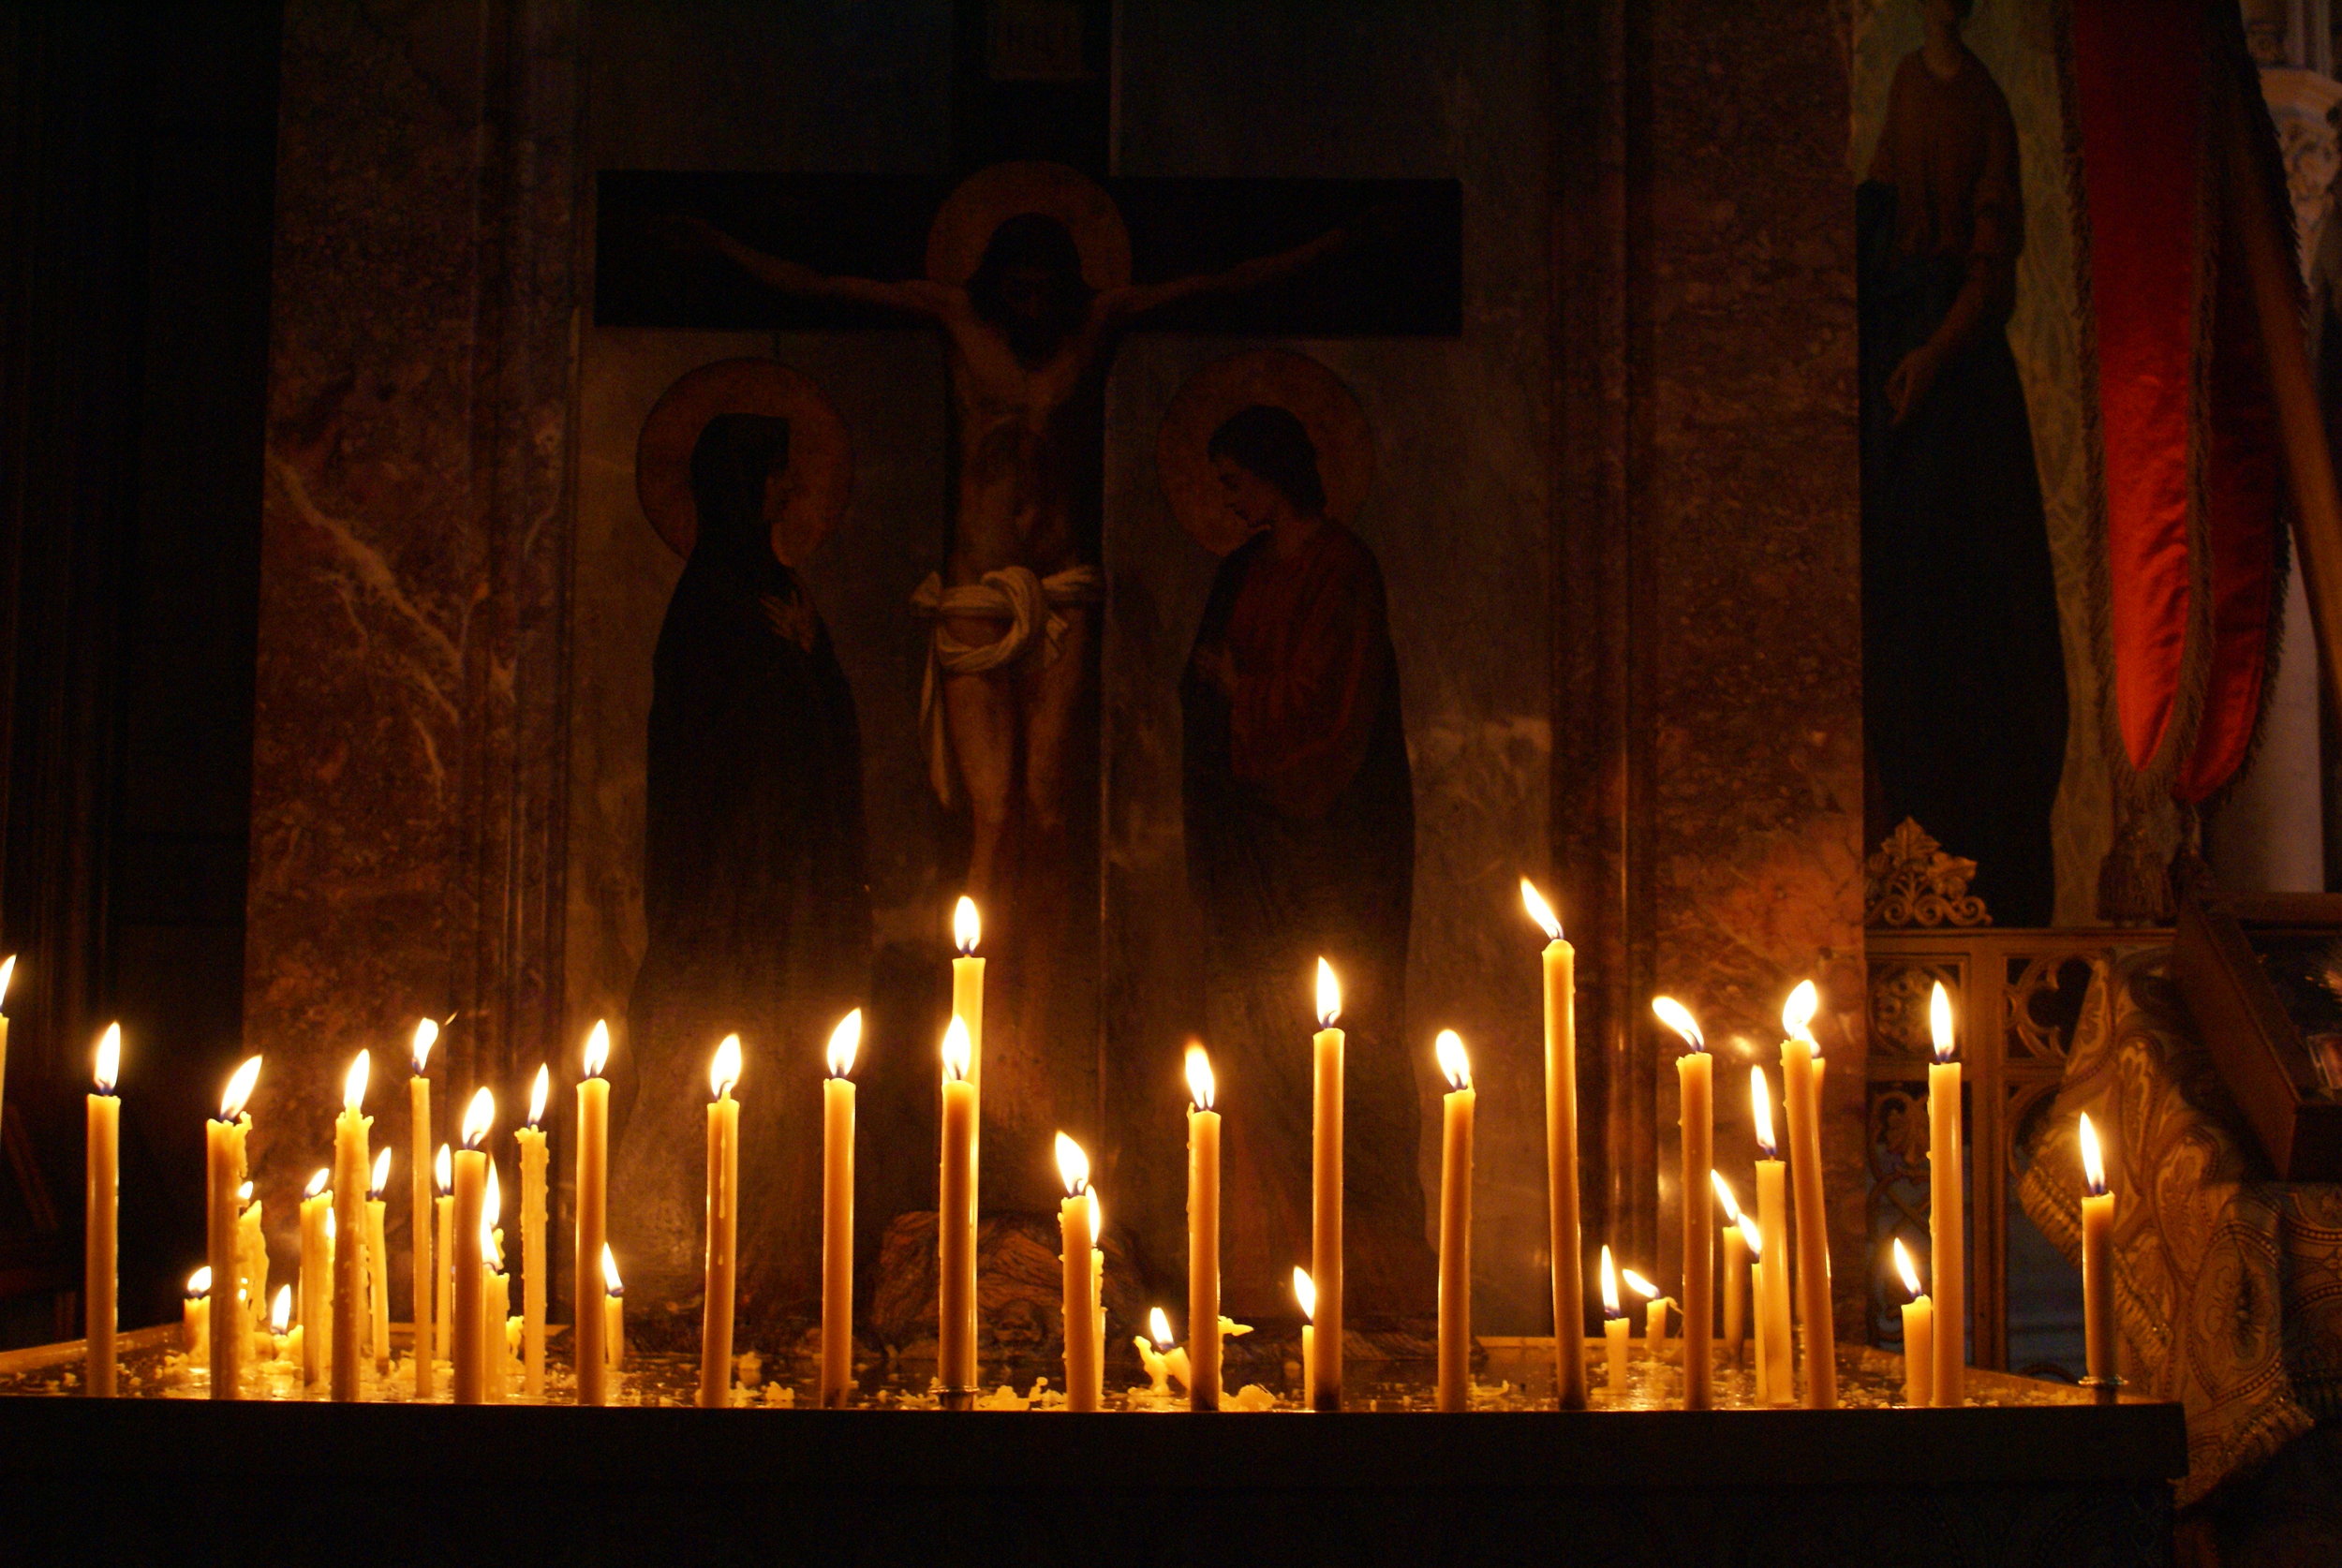 В церкви горят свечи. Свечи в храме. Горящие свечи в храме. Свеча православная. Церковь внутри свечи.